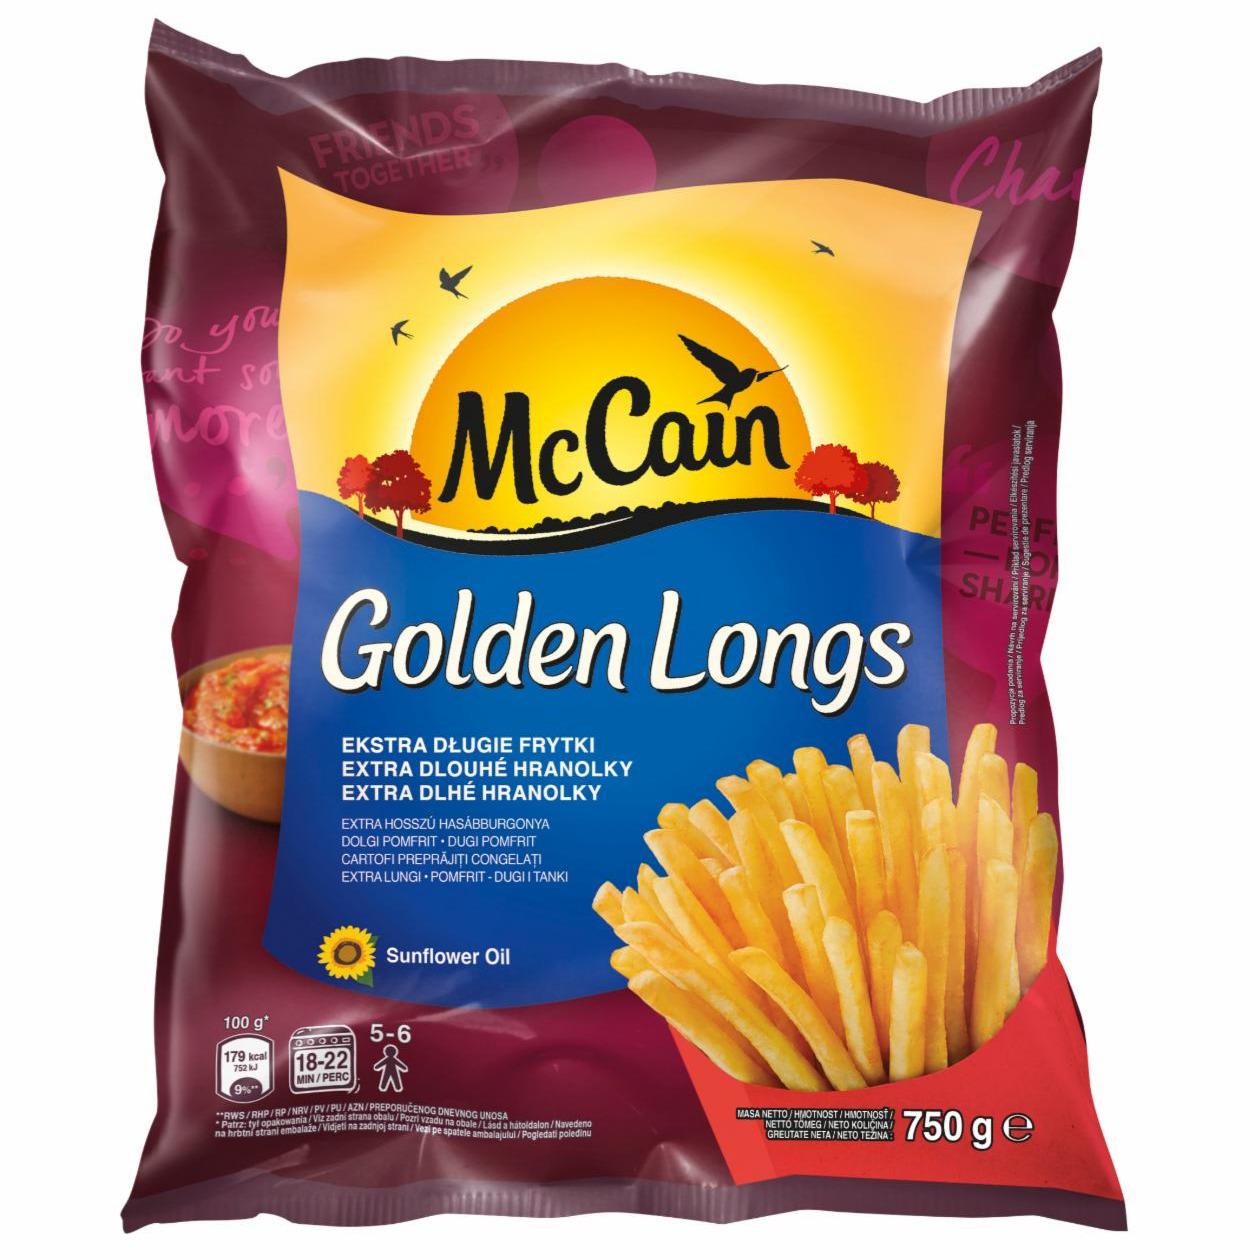 Zdjęcia - Golden Longs Frytki ekstra długie McCain